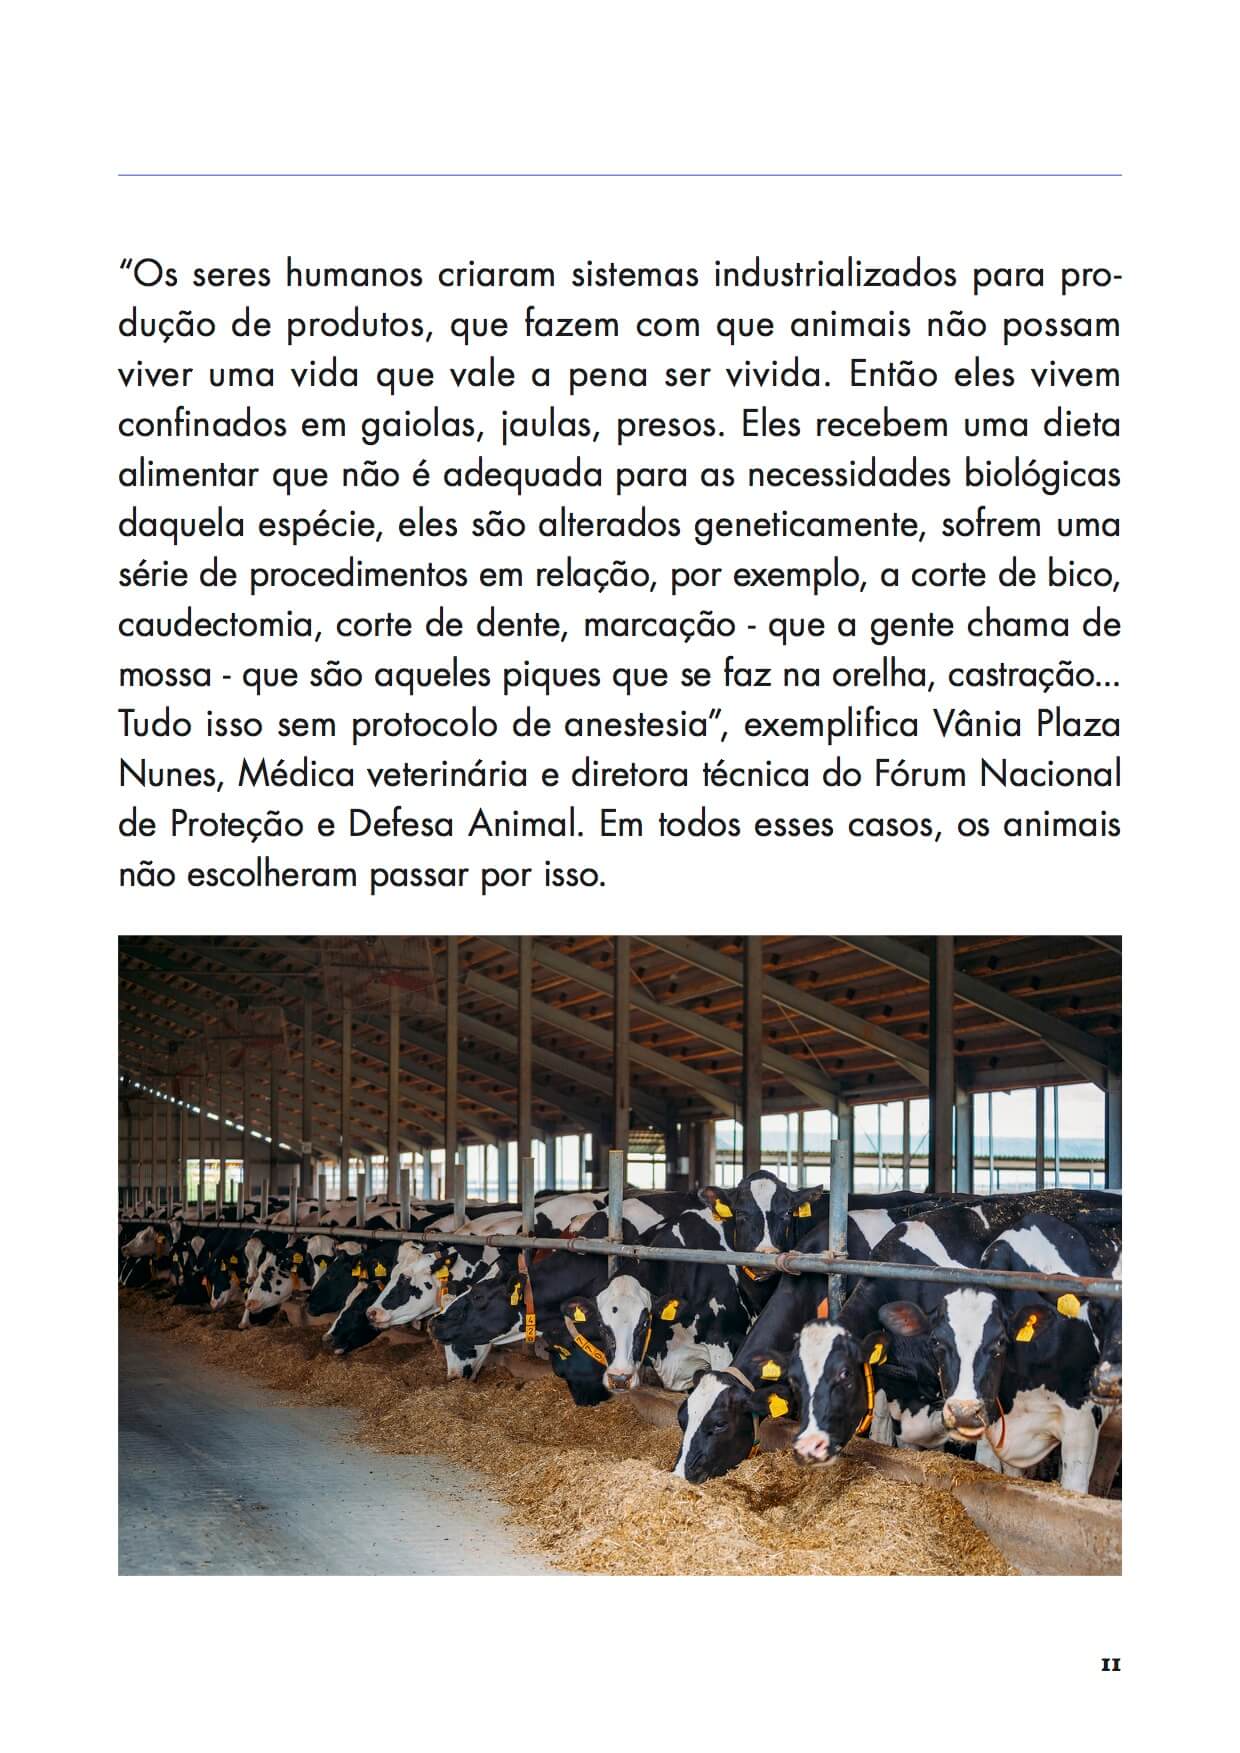 Veganismos Ed. 15 - Comer carne é uma escolha pessoal?  - PRODUTO DIGITAL (PDF)